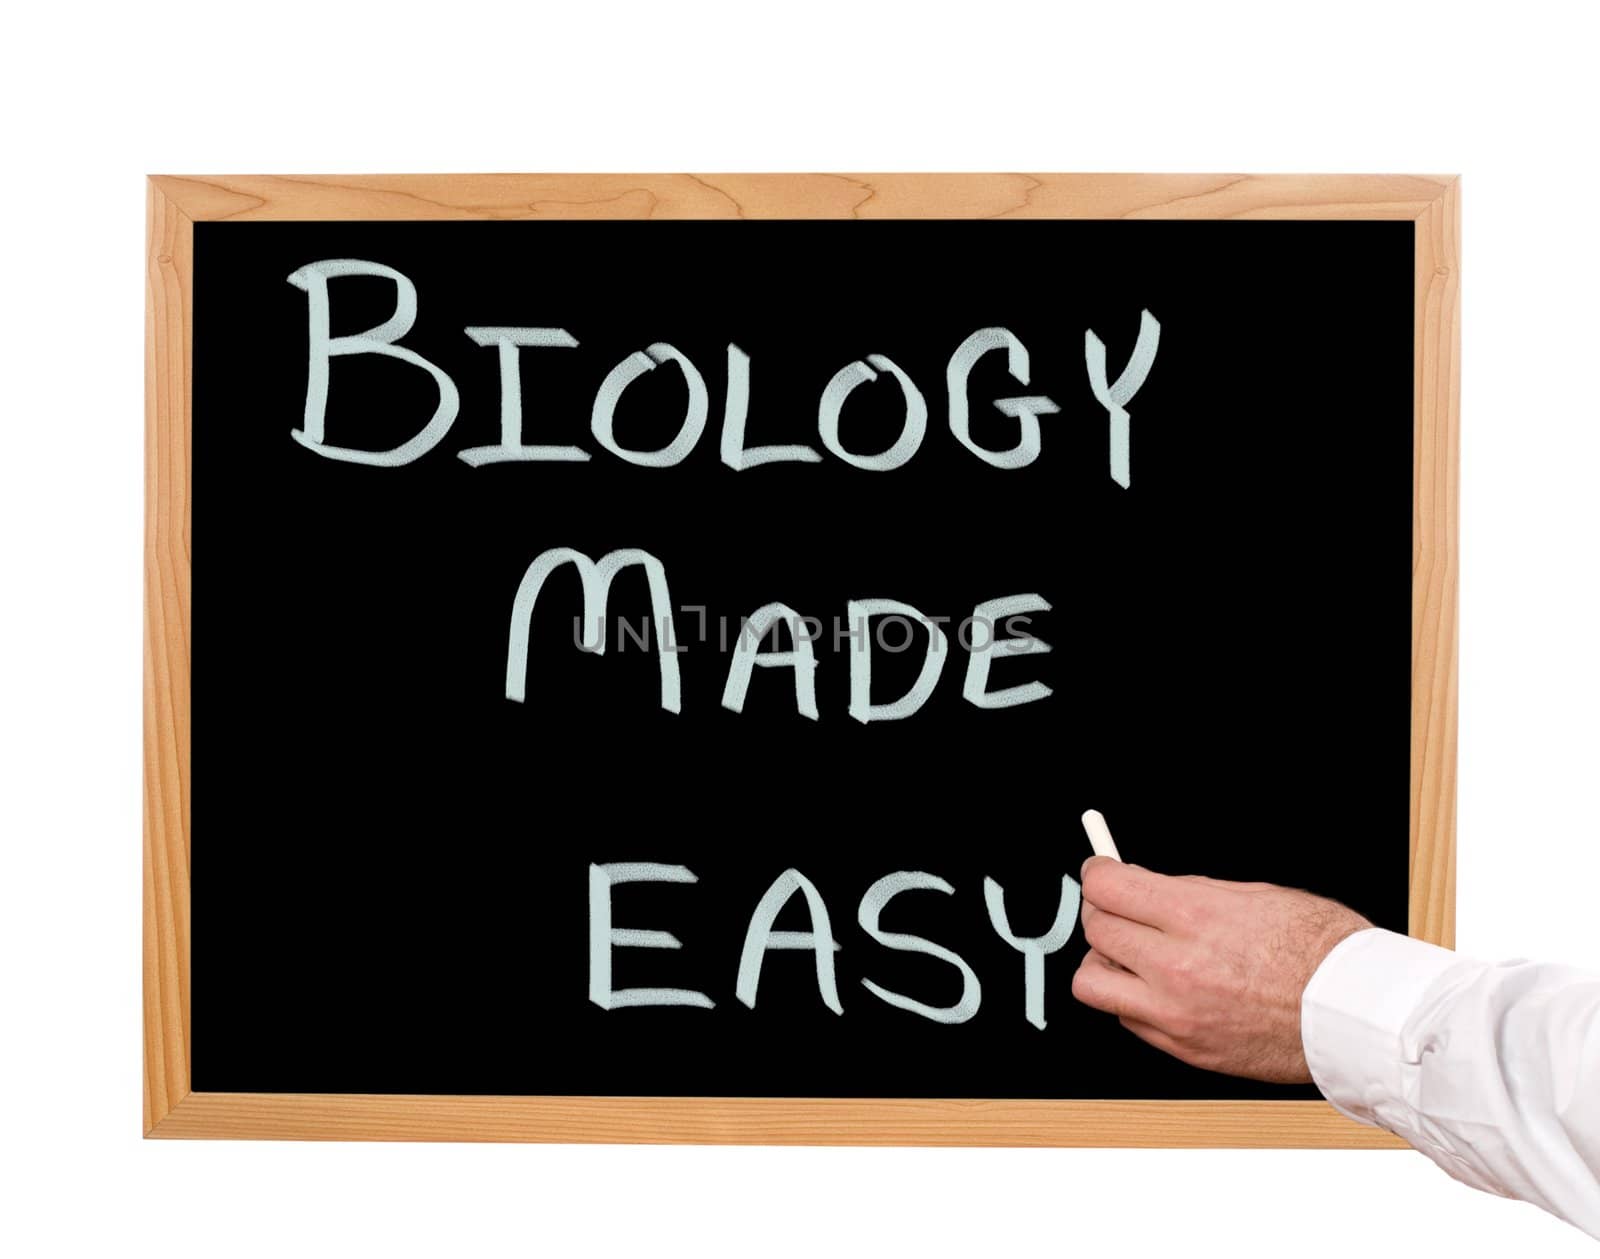 Biology made easy is written in chalk on a chalkboard.